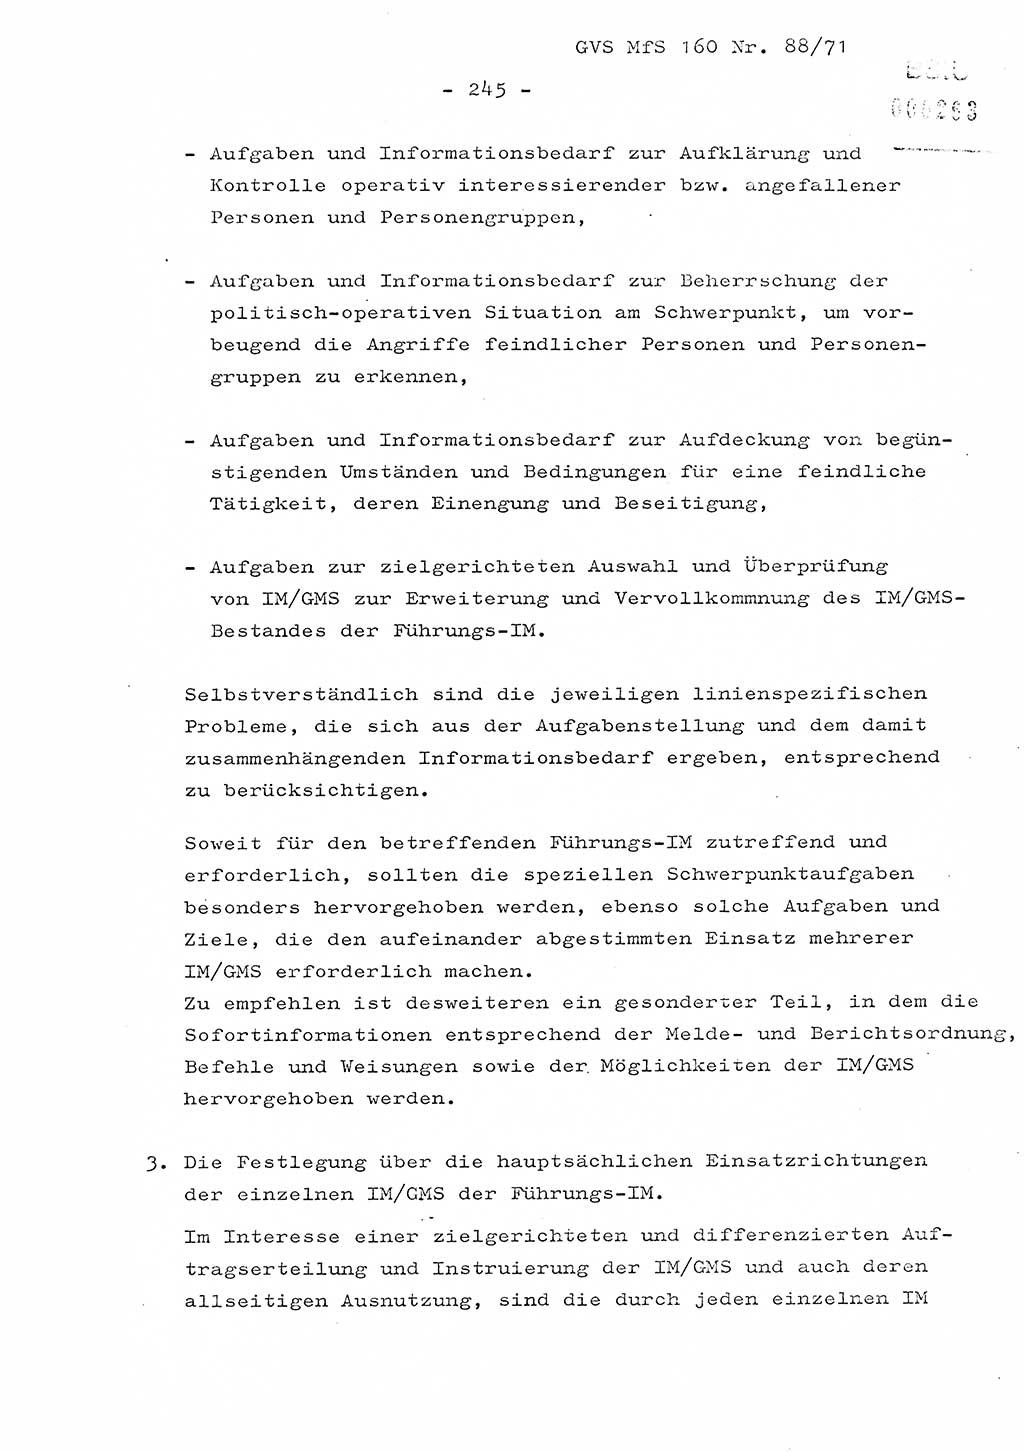 Dissertation Oberstleutnant Josef Schwarz (BV Schwerin), Major Fritz Amm (JHS), Hauptmann Peter Gräßler (JHS), Ministerium für Staatssicherheit (MfS) [Deutsche Demokratische Republik (DDR)], Juristische Hochschule (JHS), Geheime Verschlußsache (GVS) 160-88/71, Potsdam 1972, Seite 245 (Diss. MfS DDR JHS GVS 160-88/71 1972, S. 245)